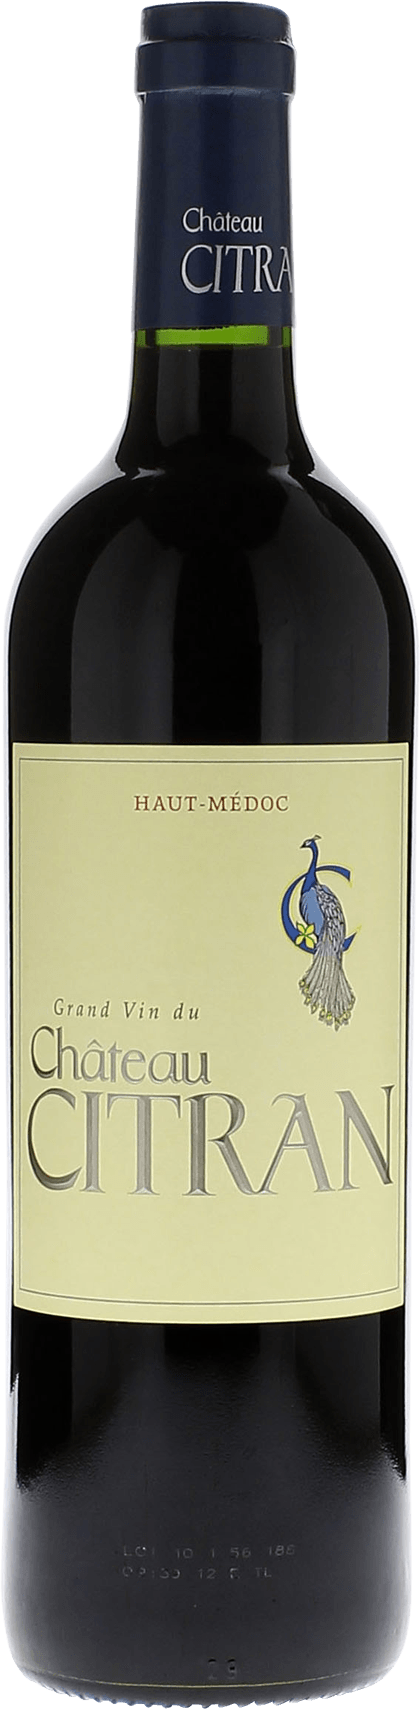 Citran 2019  Haut-Mdoc, Bordeaux rouge